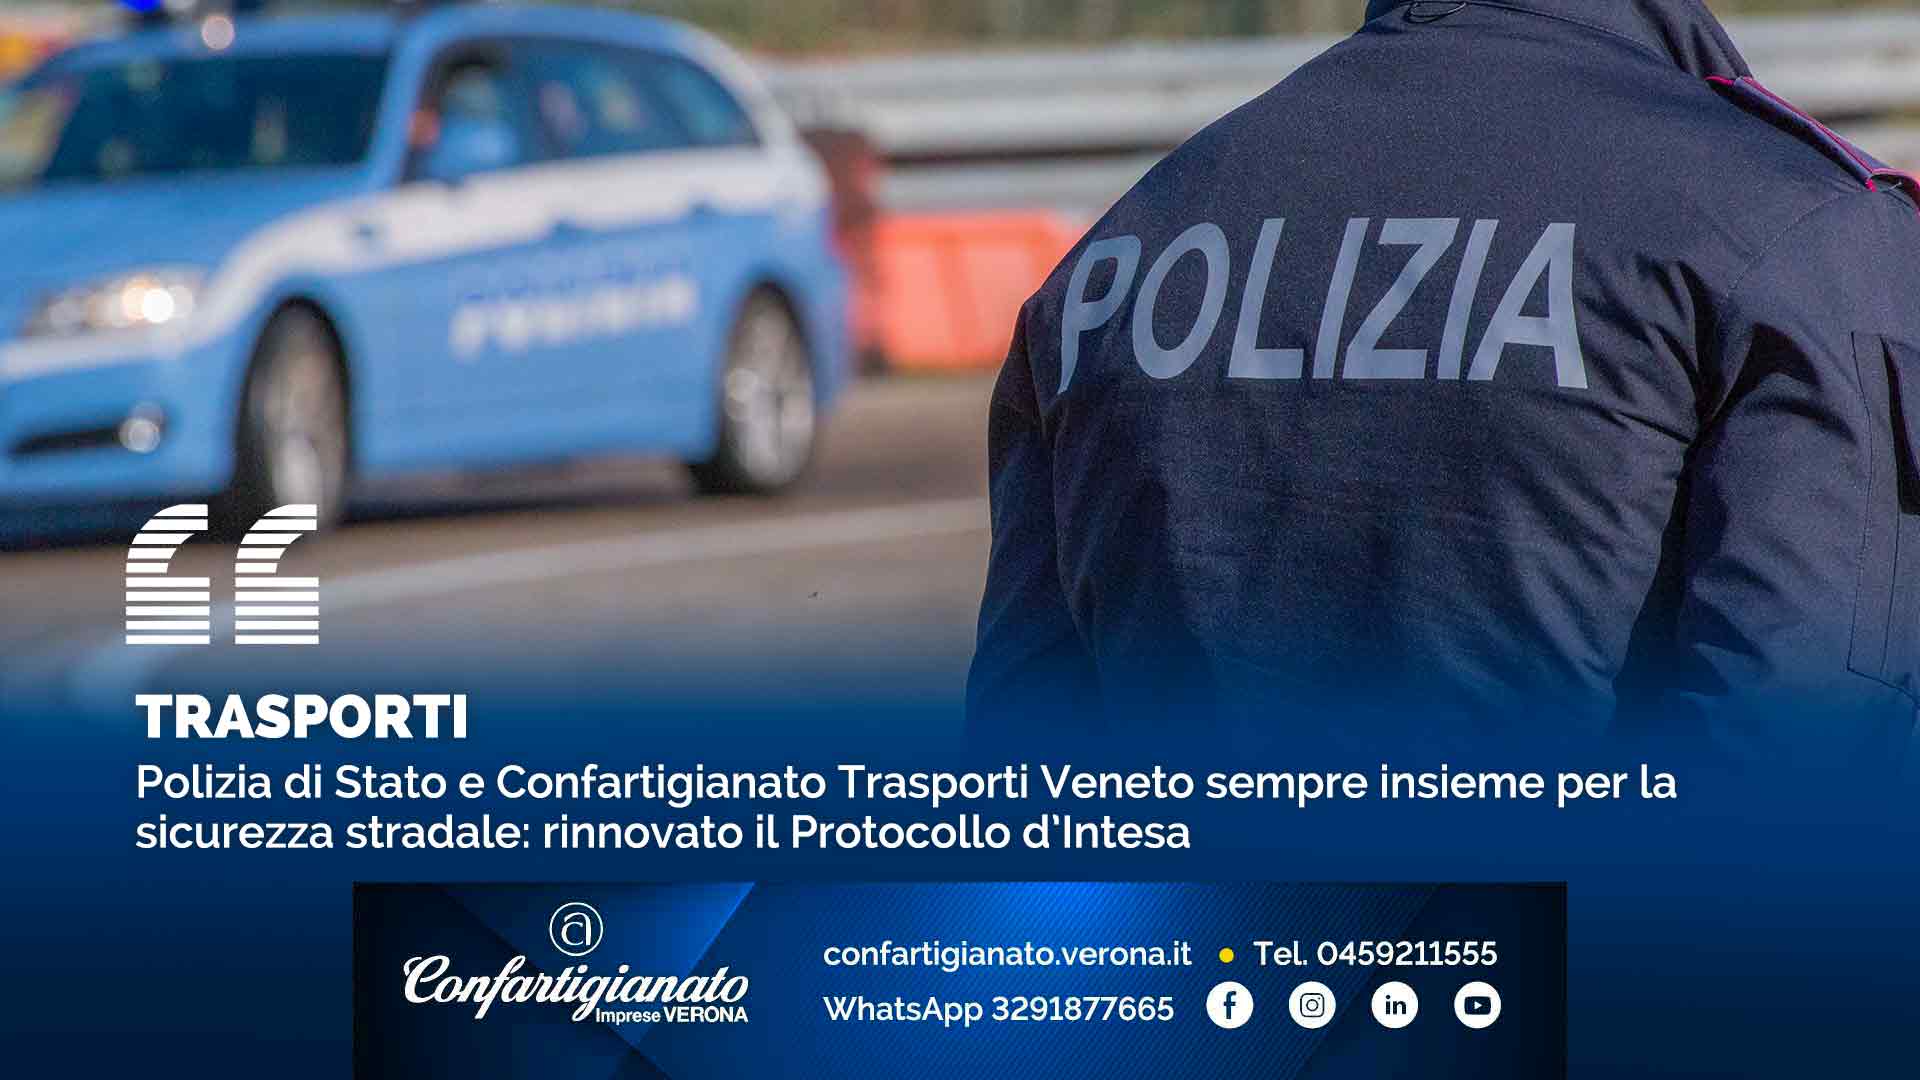 TRASPORTI – Polizia di Stato e Confartigianato Trasporti Veneto sempre insieme per la sicurezza stradale: rinnovato il Protocollo d’Intesa